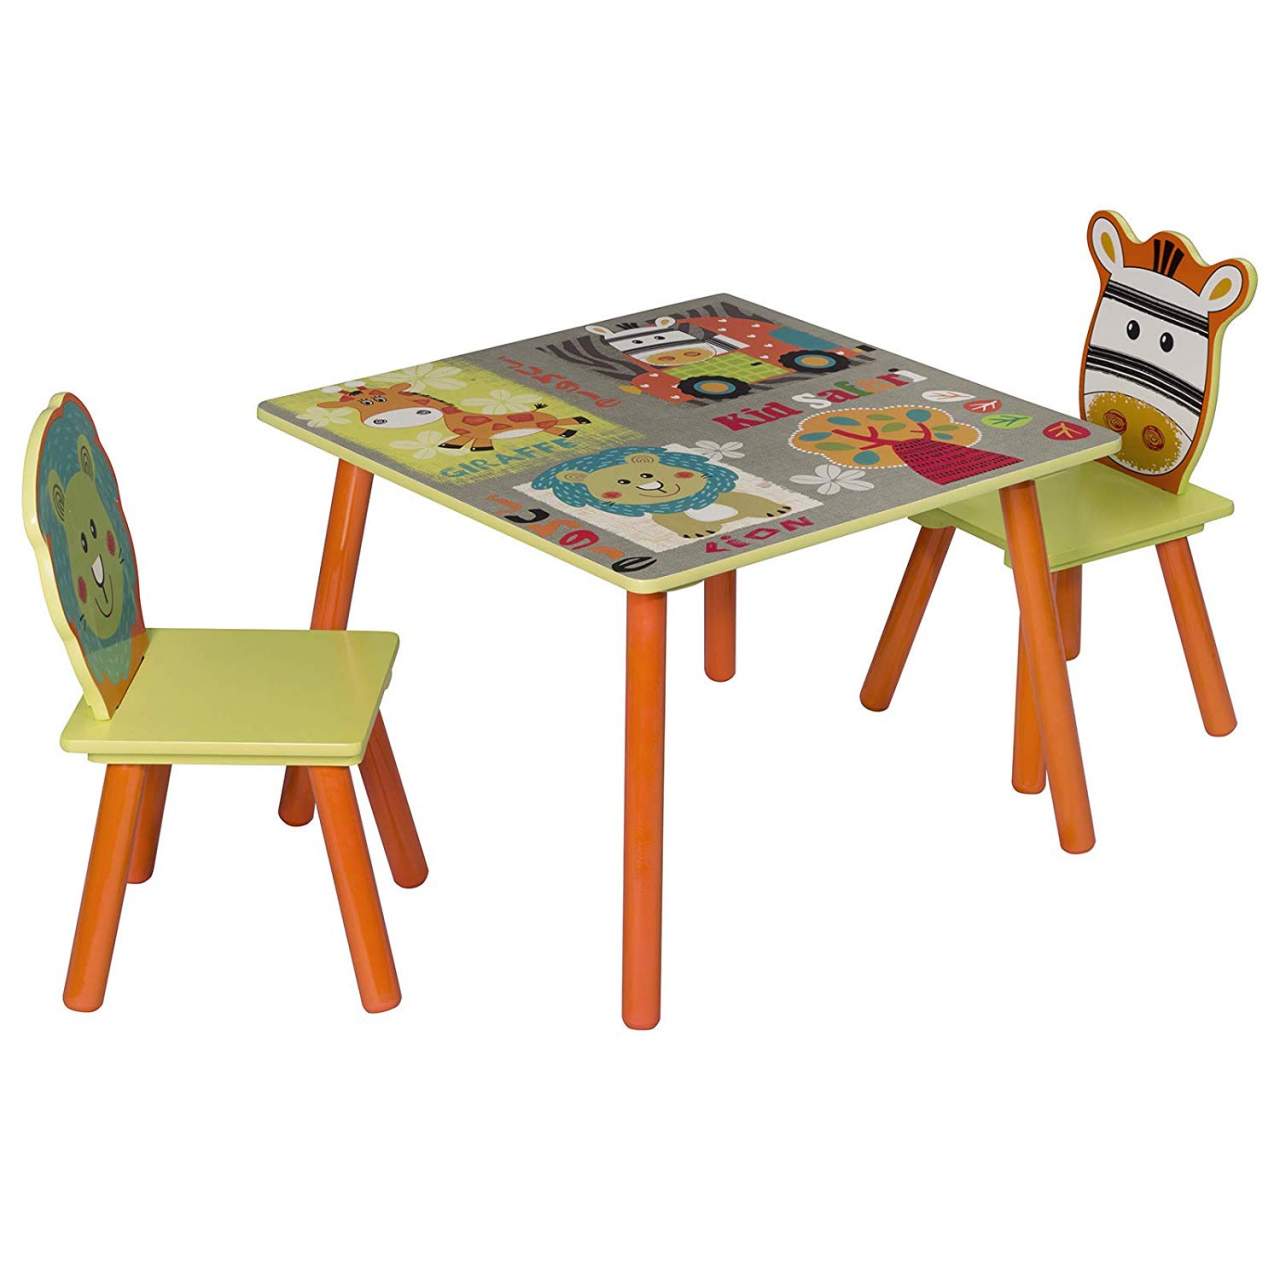 Gyerekasztal 2 székkel, színes , erdei állatos